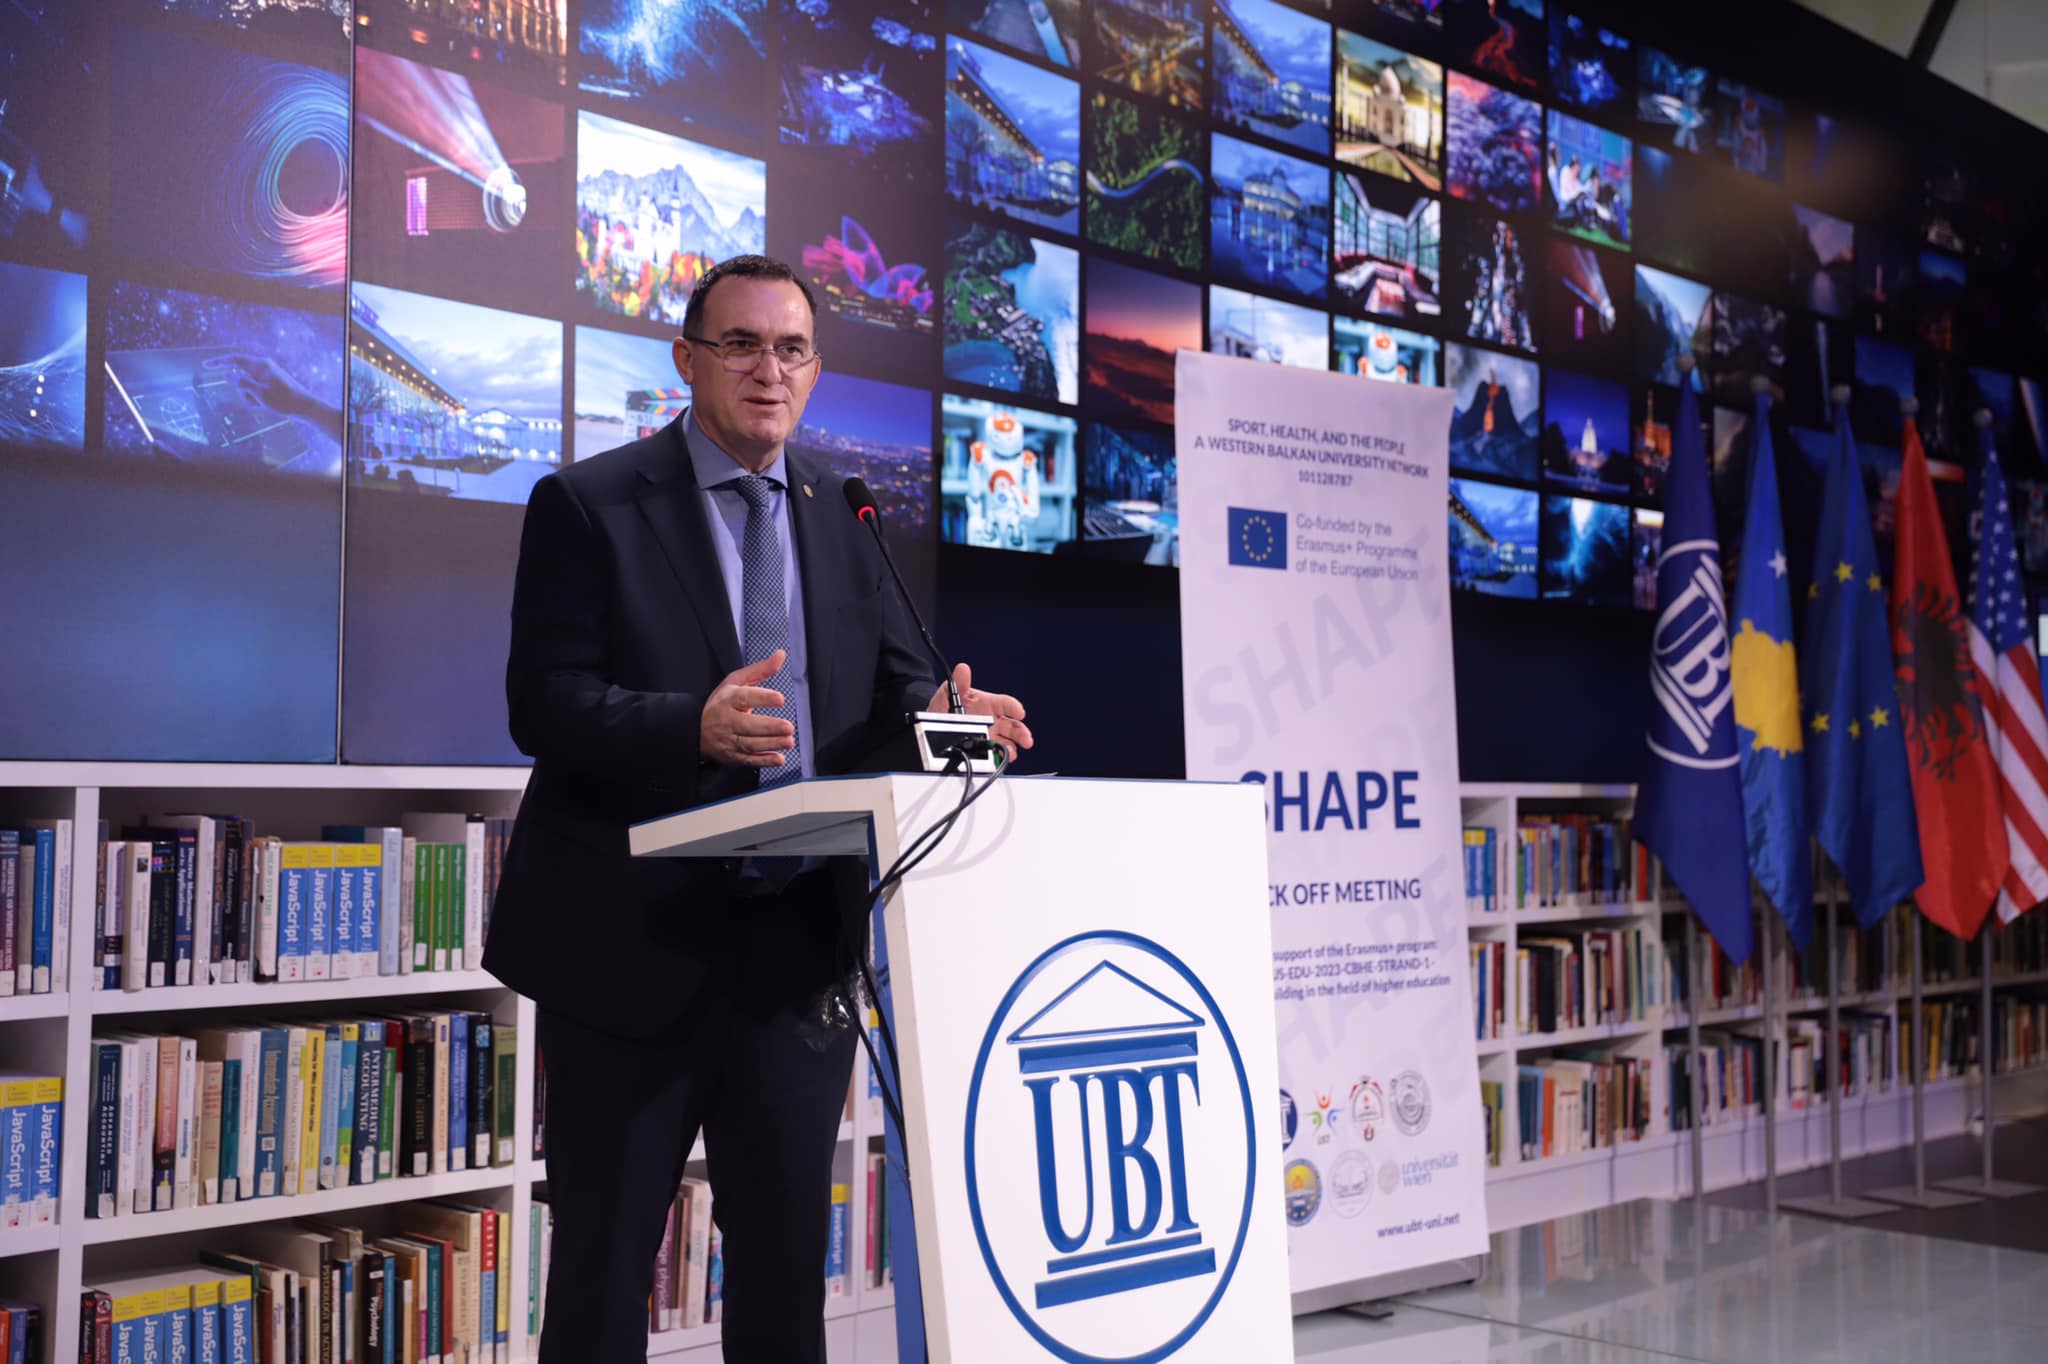 Prezantohet projekti “Shape” në UBT: Ndërtimi i rrjetit universitar për pportin në Ballkanin Perëndimor dhe promovimi i shëndetit